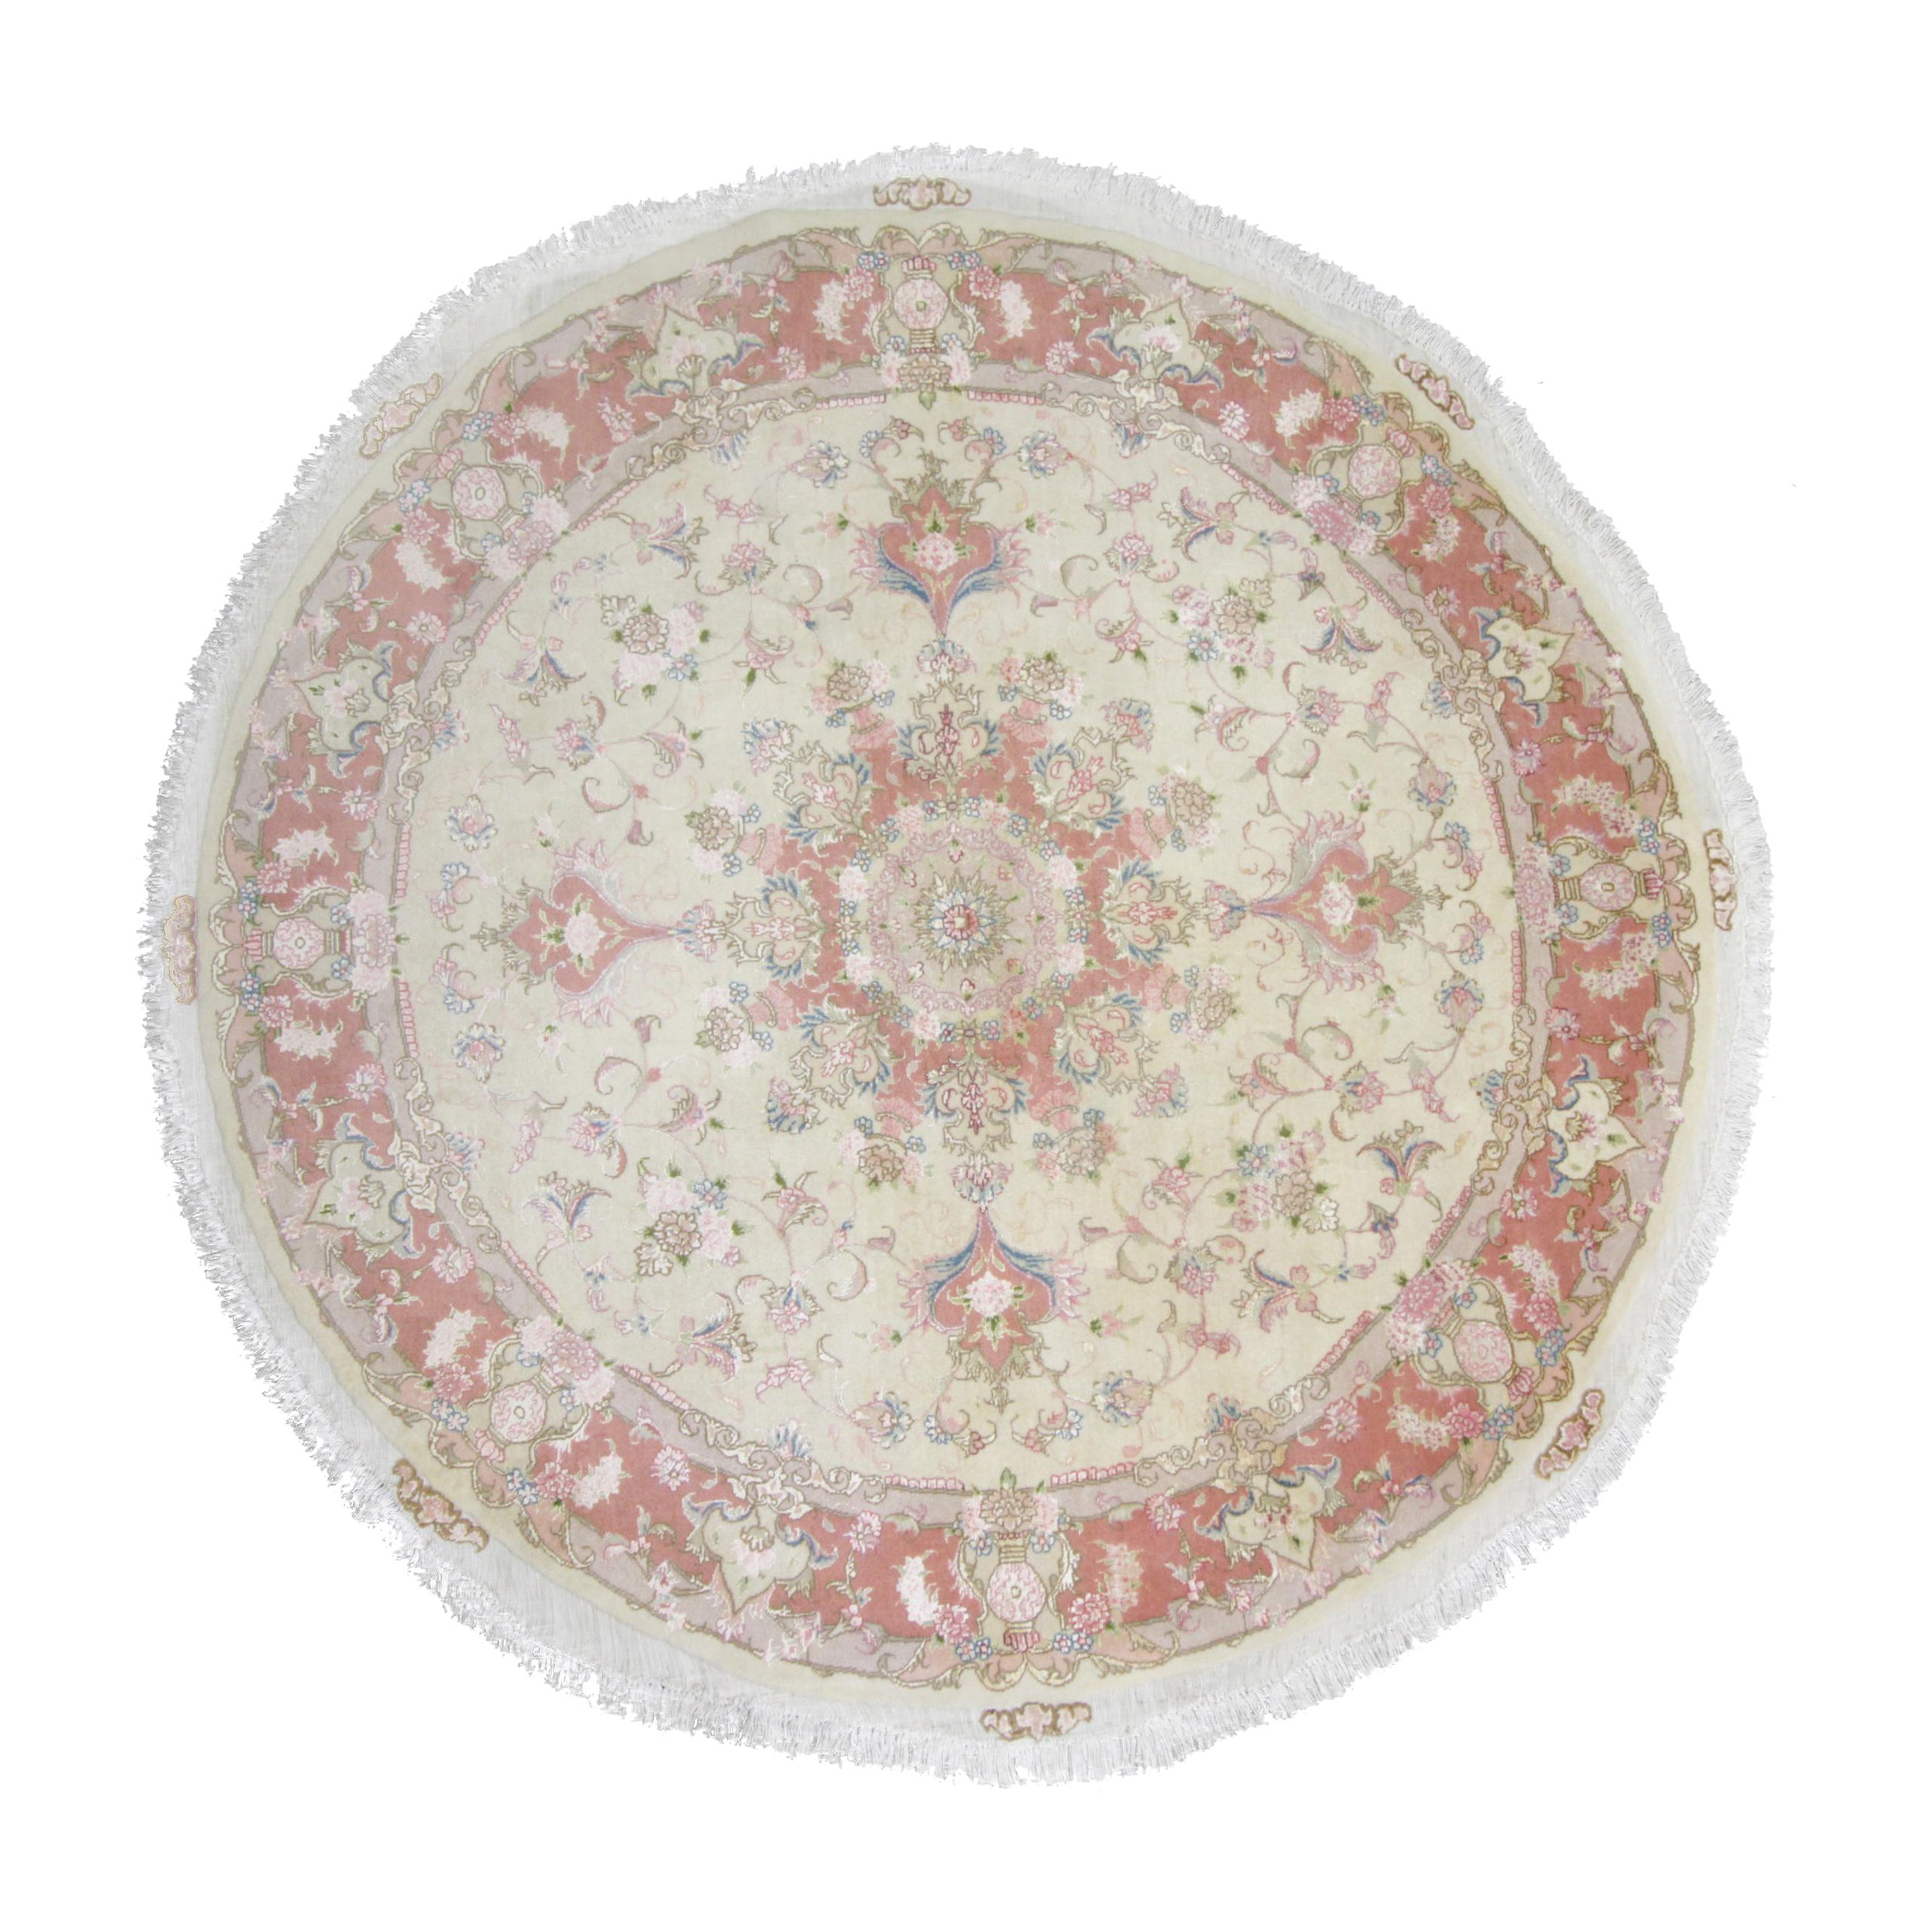 Runder türkischer Teppich aus Wolle und Seide, orientalischer cremefarbener und rosa handgefertigter Teppich